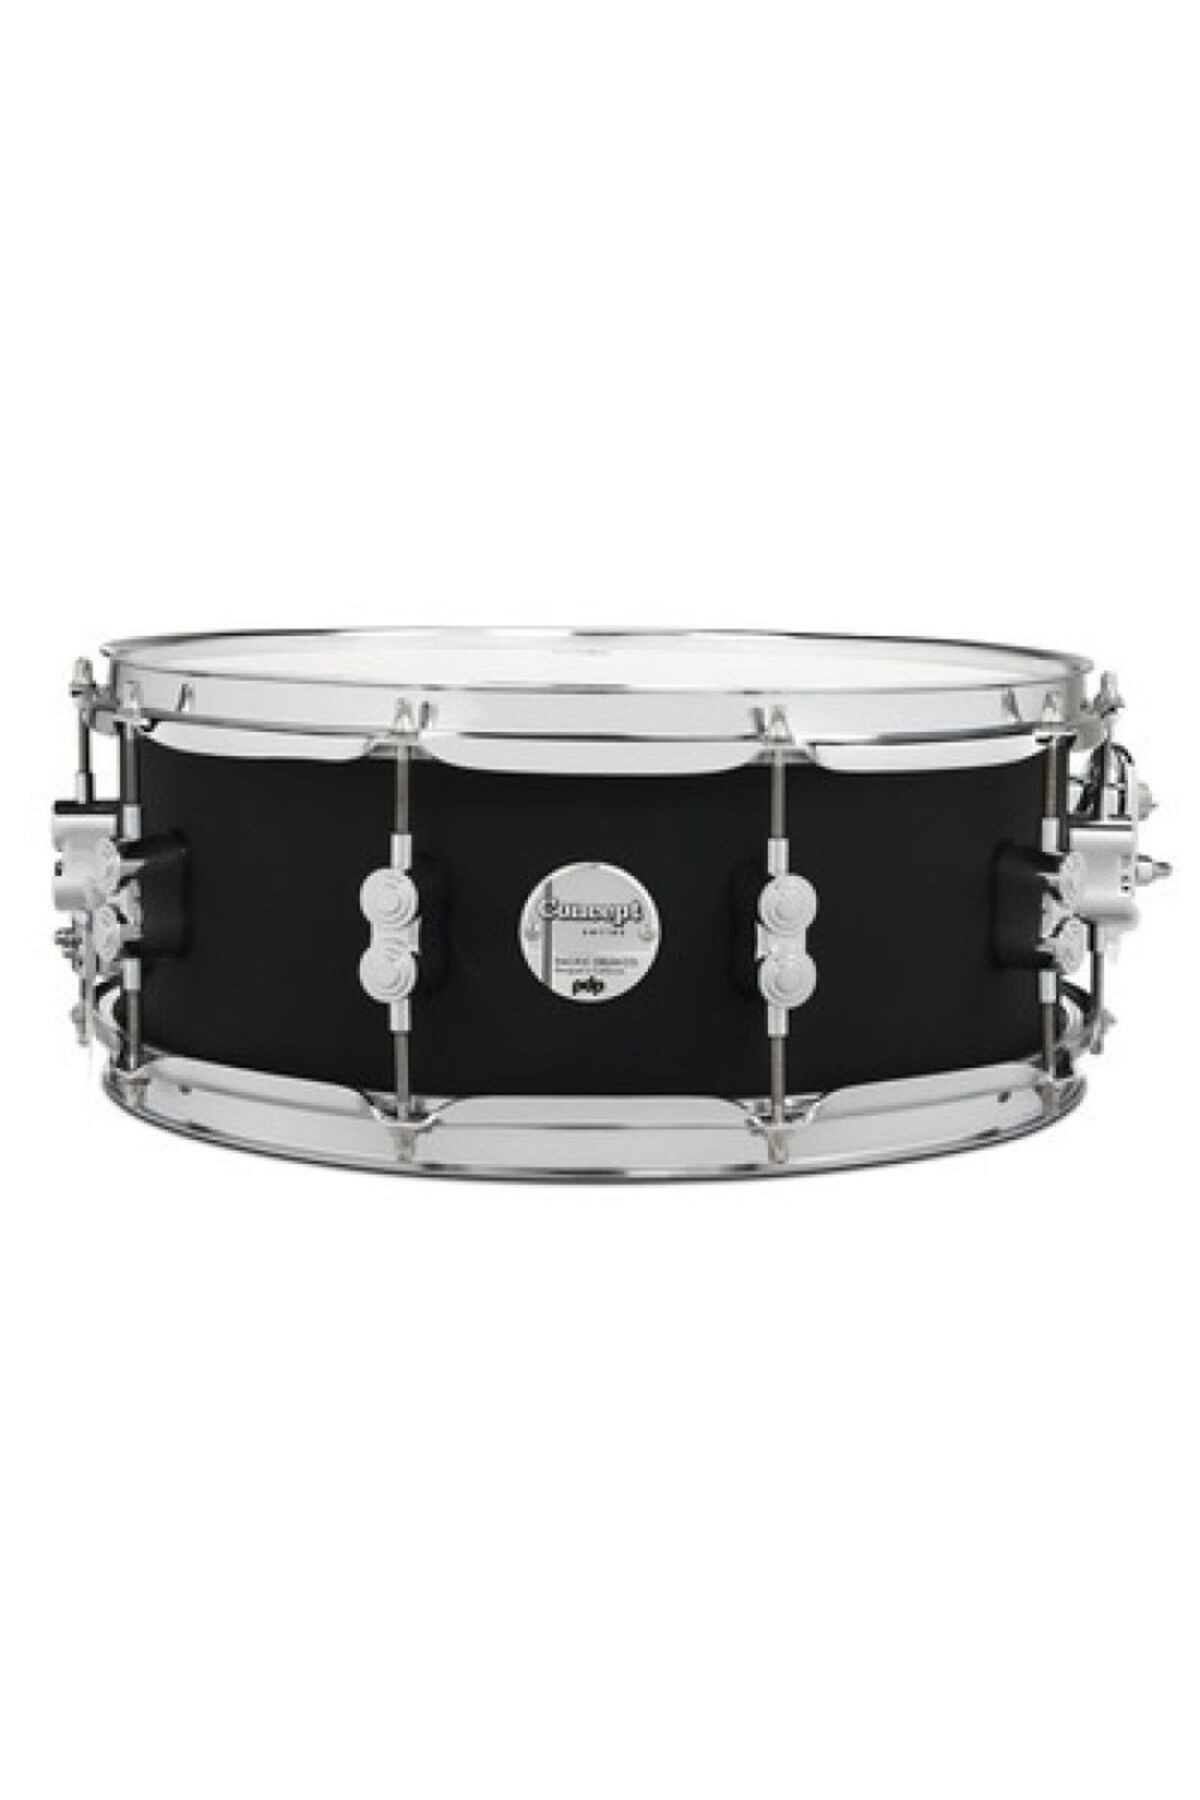 PDP Drums Concept Akçaağaç 14x5.5” Trampet (Mat Siyah)